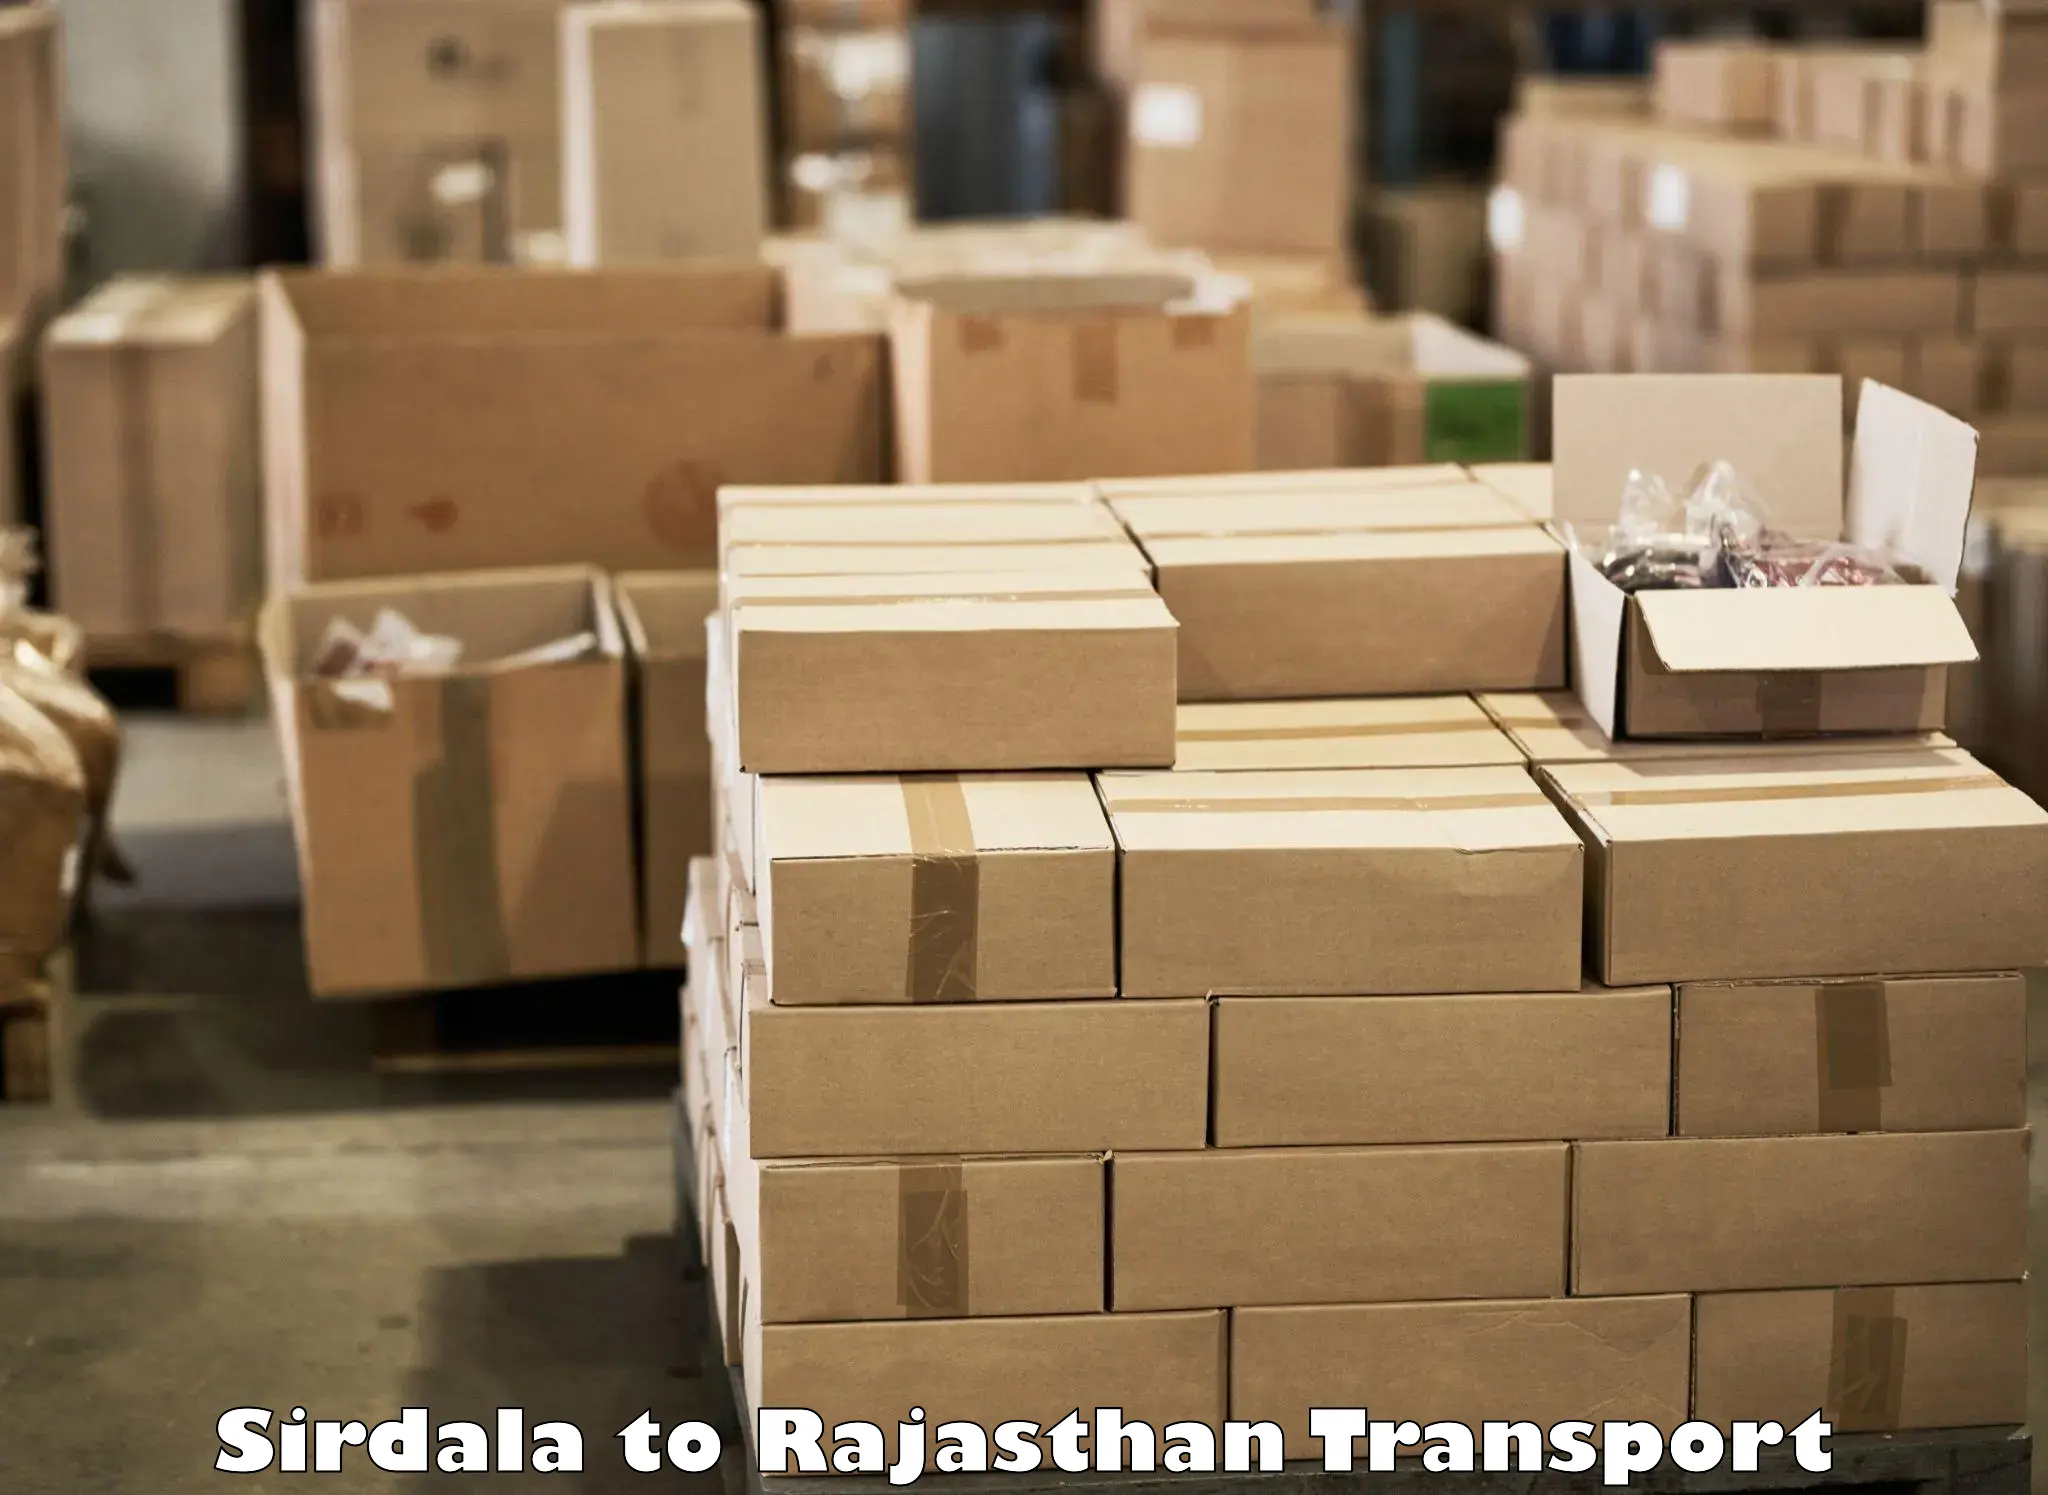 Transport shared services in Sirdala to Deshnok